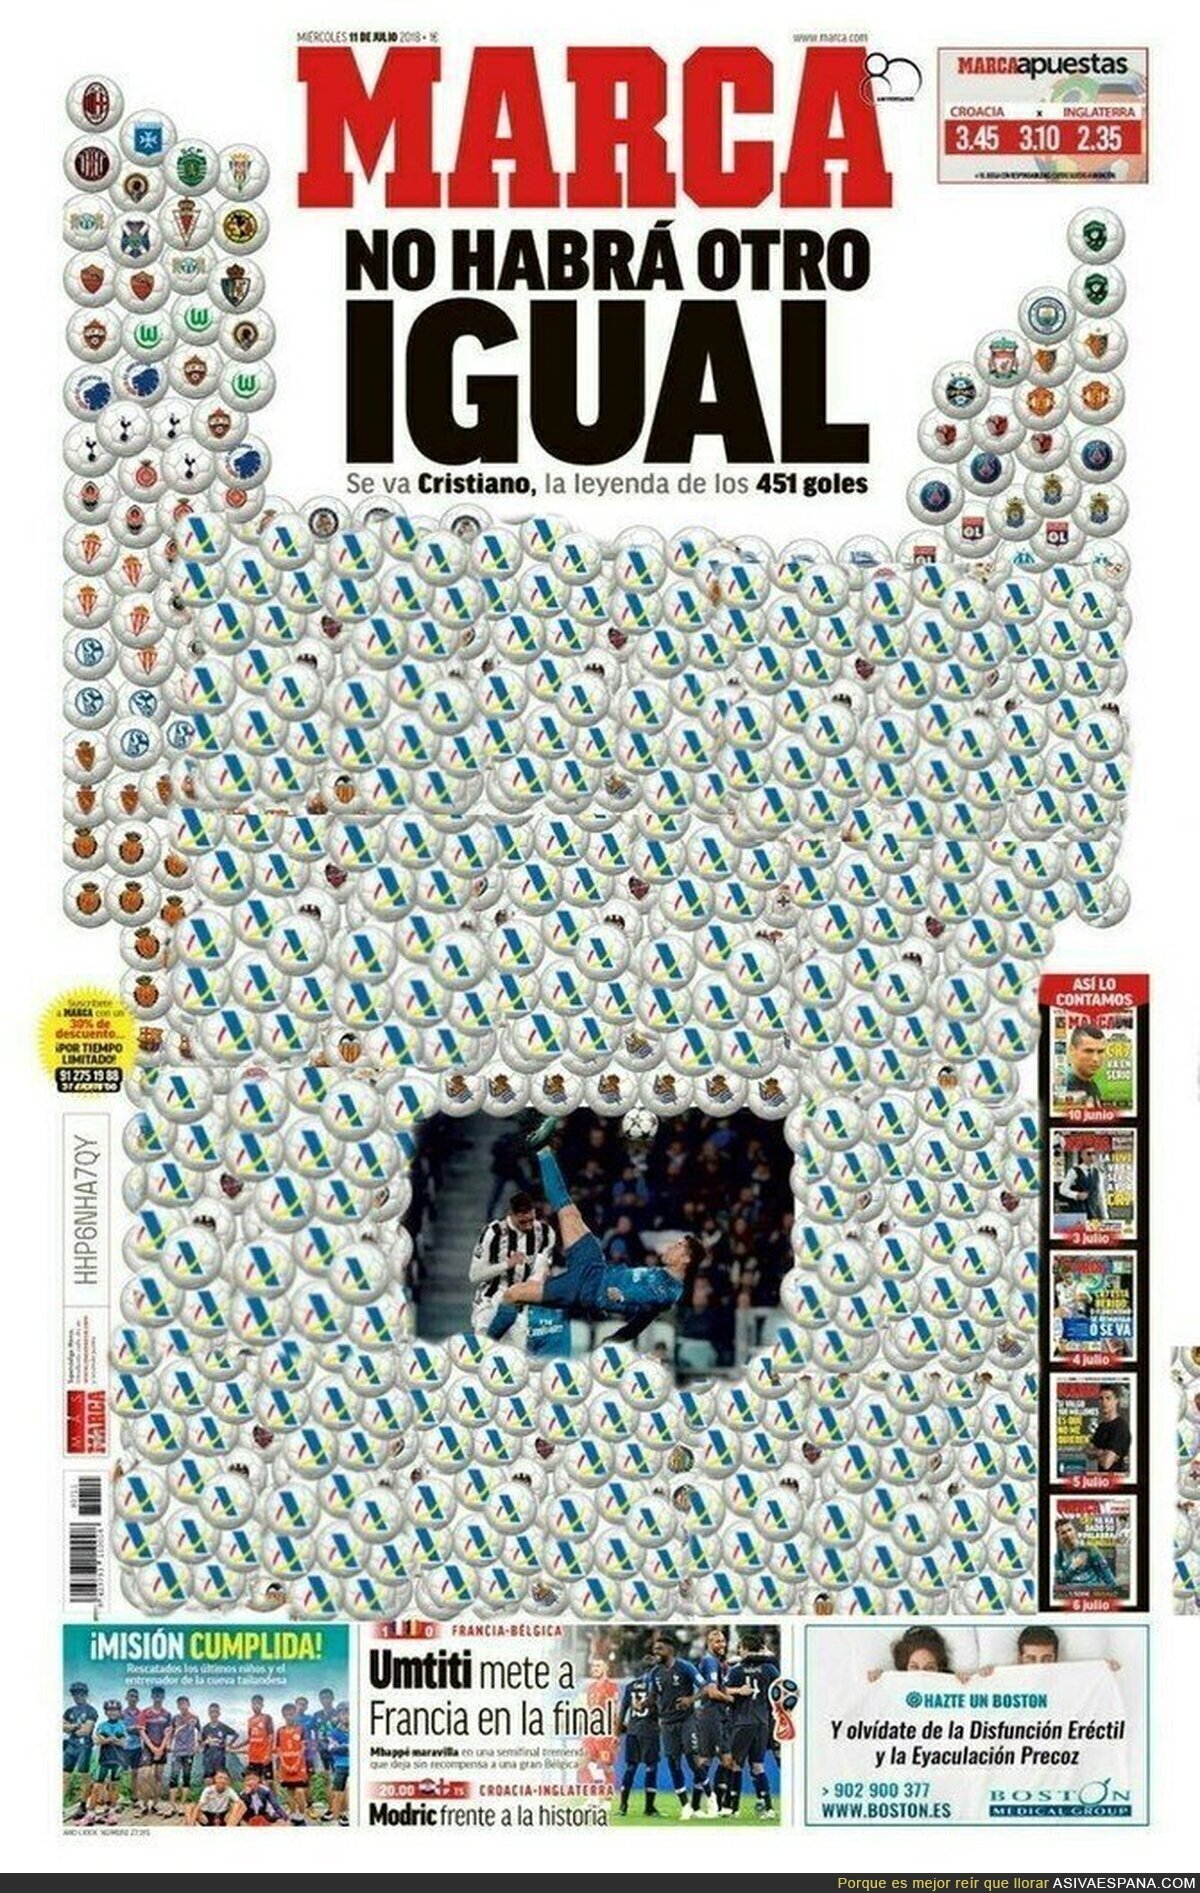 La gran portada de MARCA a Cristiano Ronaldo con todos los goles que ha marcado con el Real Madrid